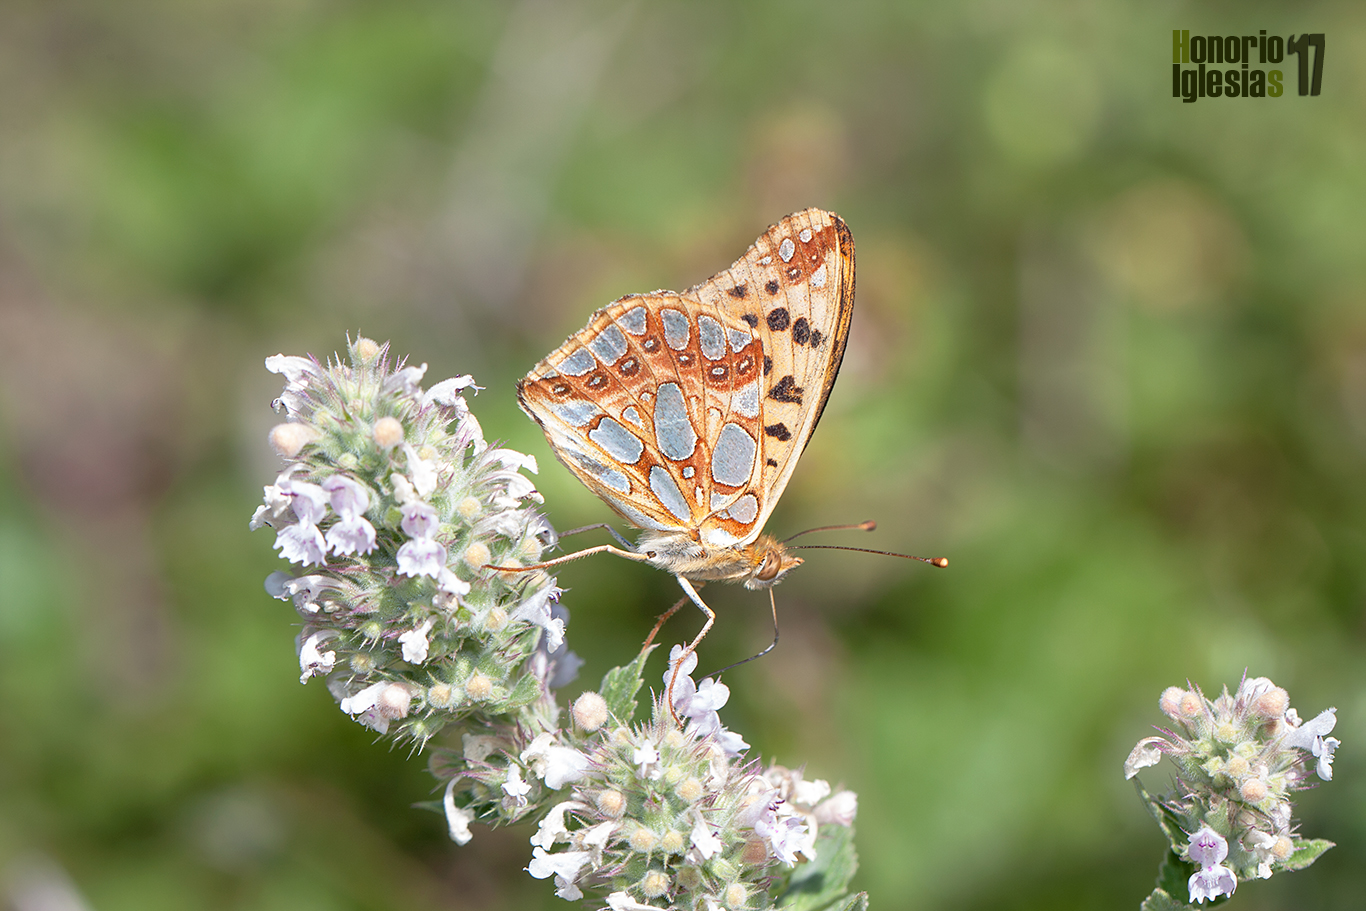 Reverso de mariposa espejitos o sofía (Issoria lathonia) . Las manchas metálicas de su reverso alar la hacen inconfundible